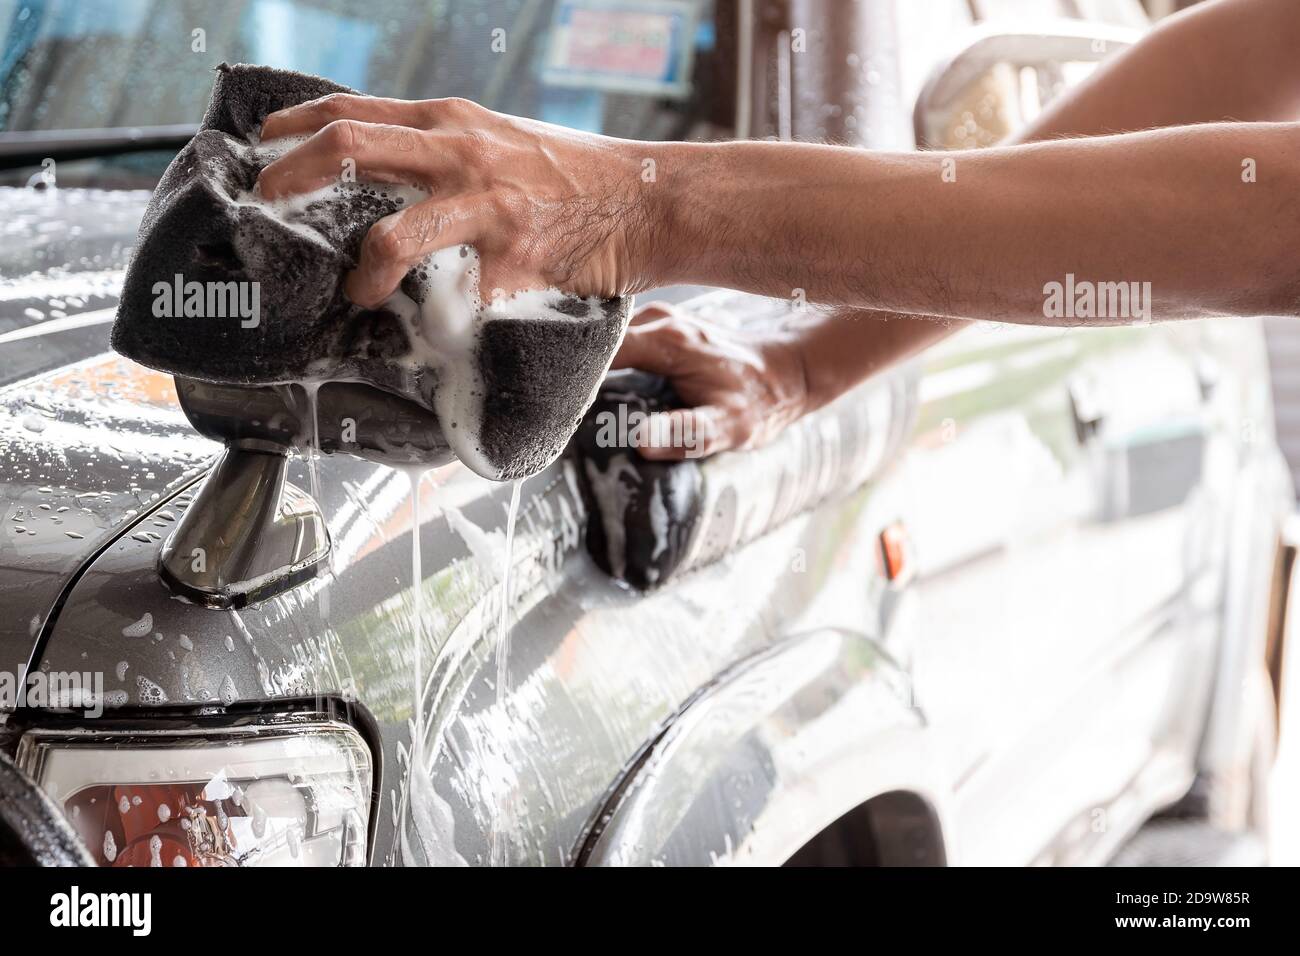 Le personnel de lavage de voiture utilise une éponge humidifiée avec du savon et de l'eau pour nettoyer la voiture. Banque D'Images